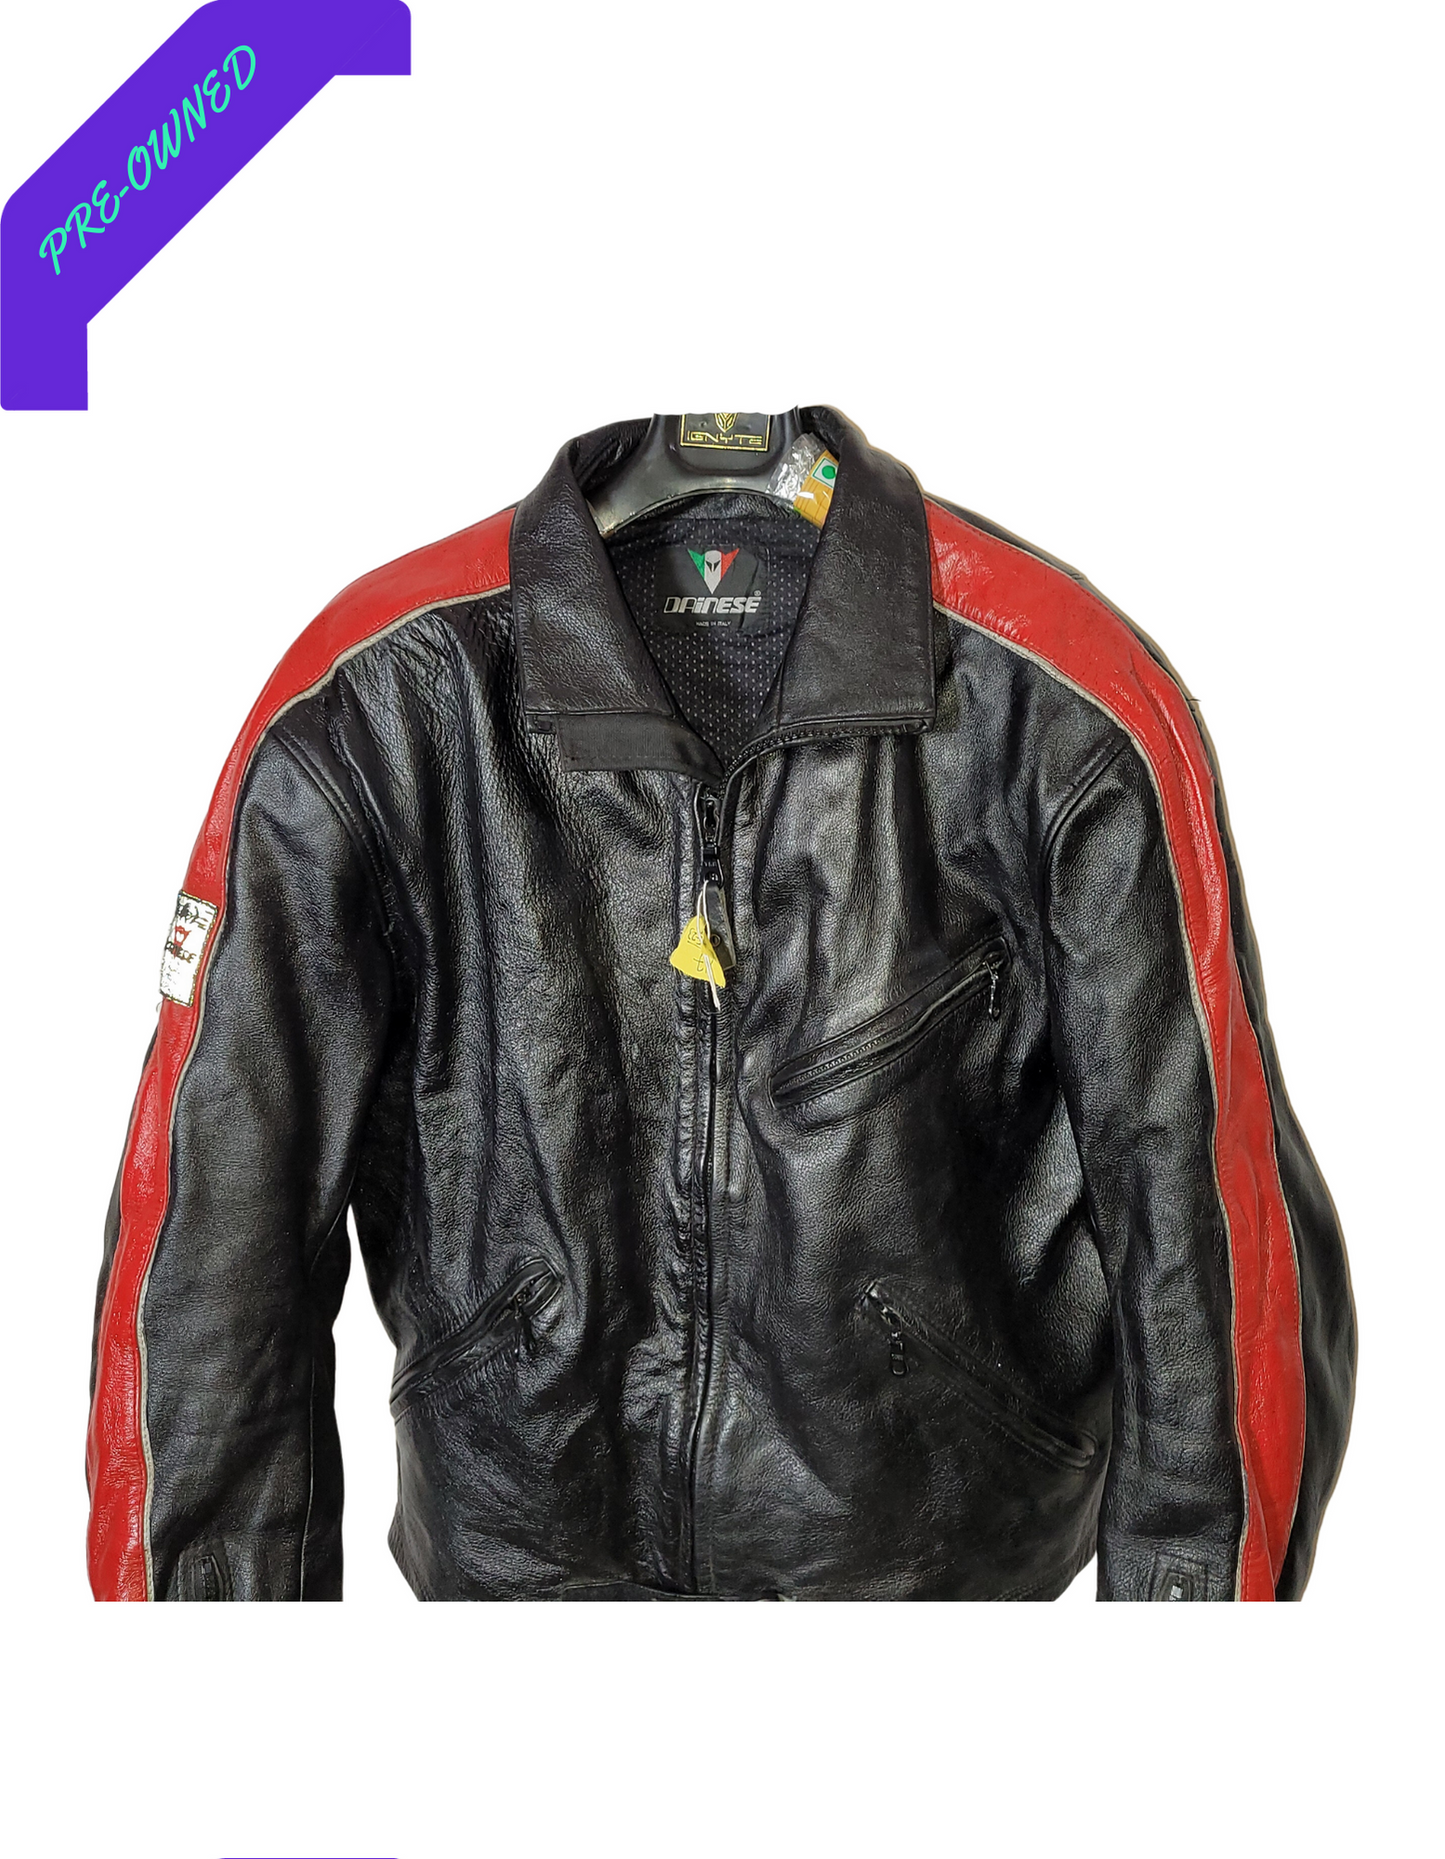 Dainese I Men Racing Jacket I Red/Black I XL